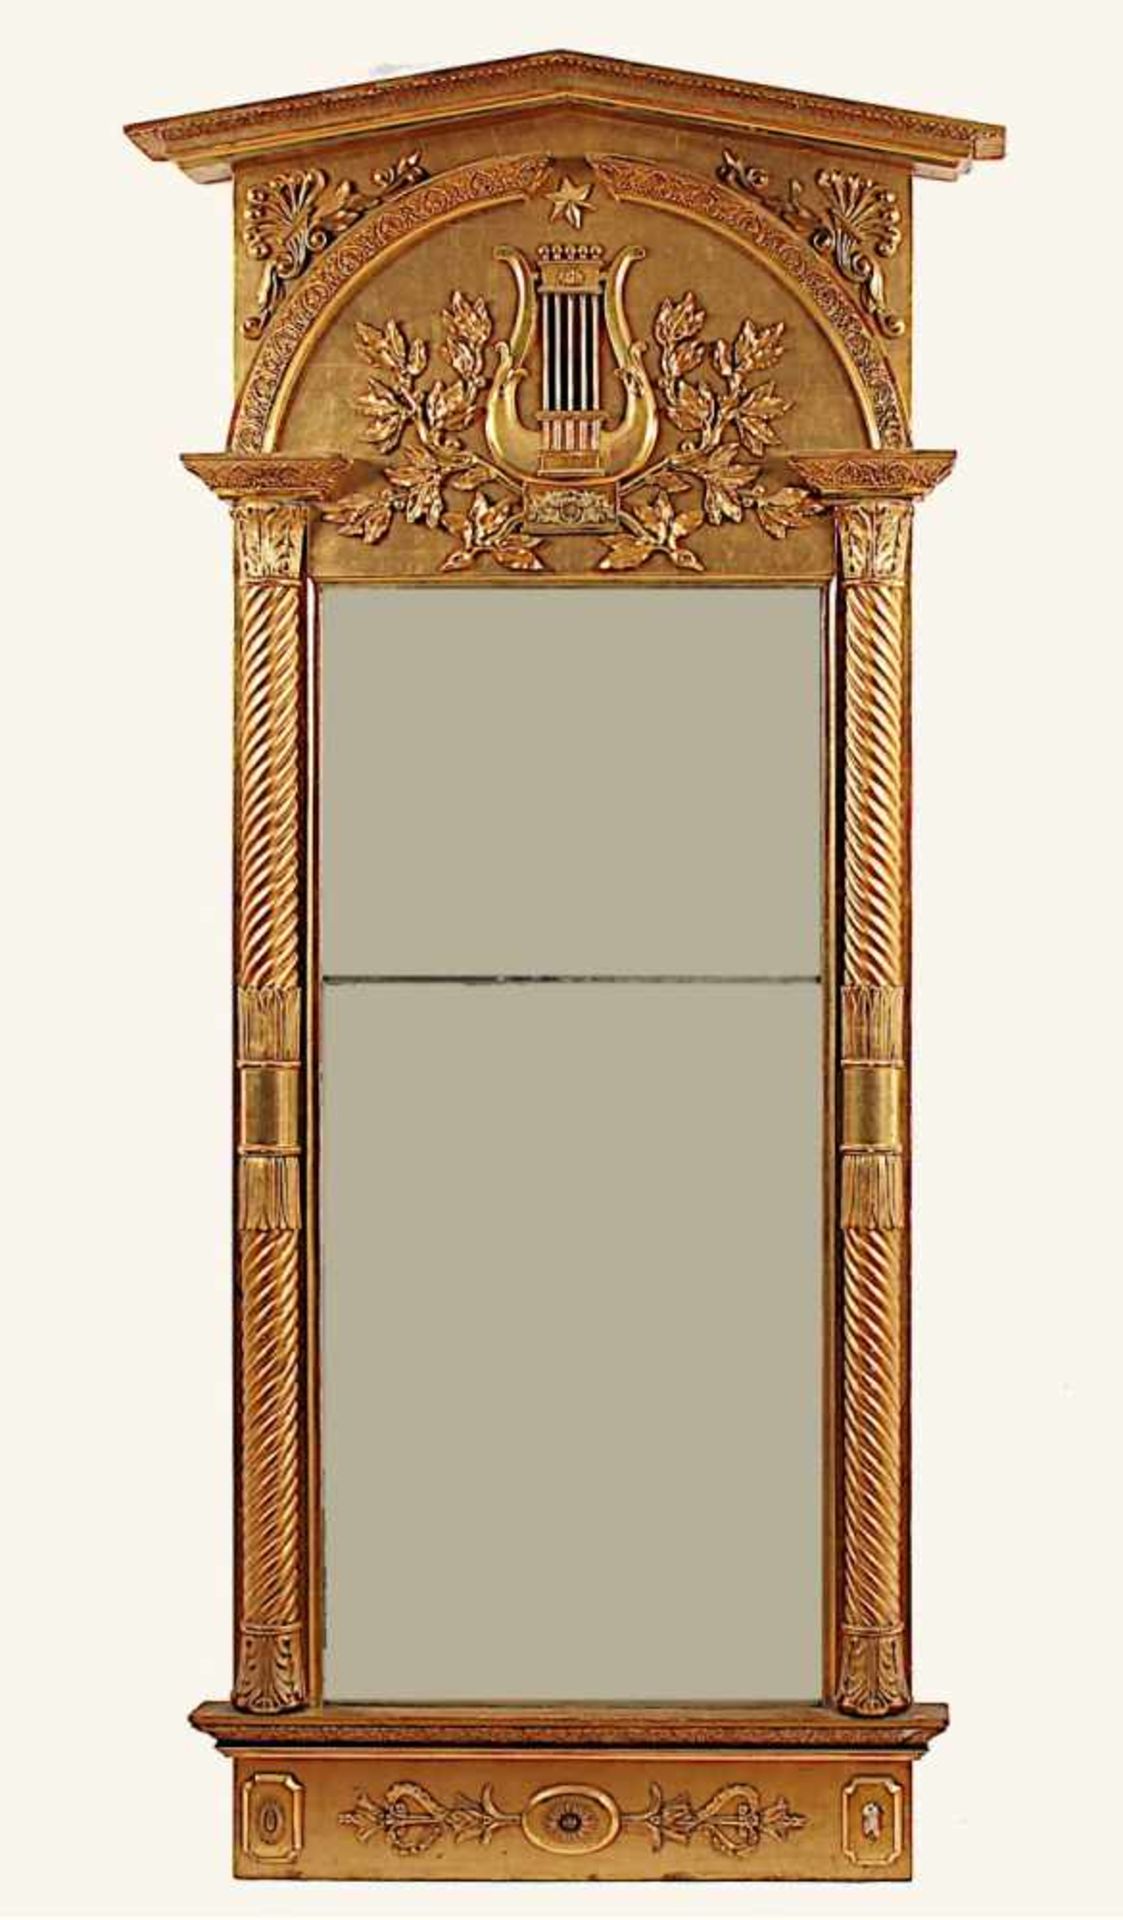 GROSSER KONSOLSPIEGEL, Holz, vergoldet, besch., originales Spiegelglas, H 234, B 109, DEUTSCH, um